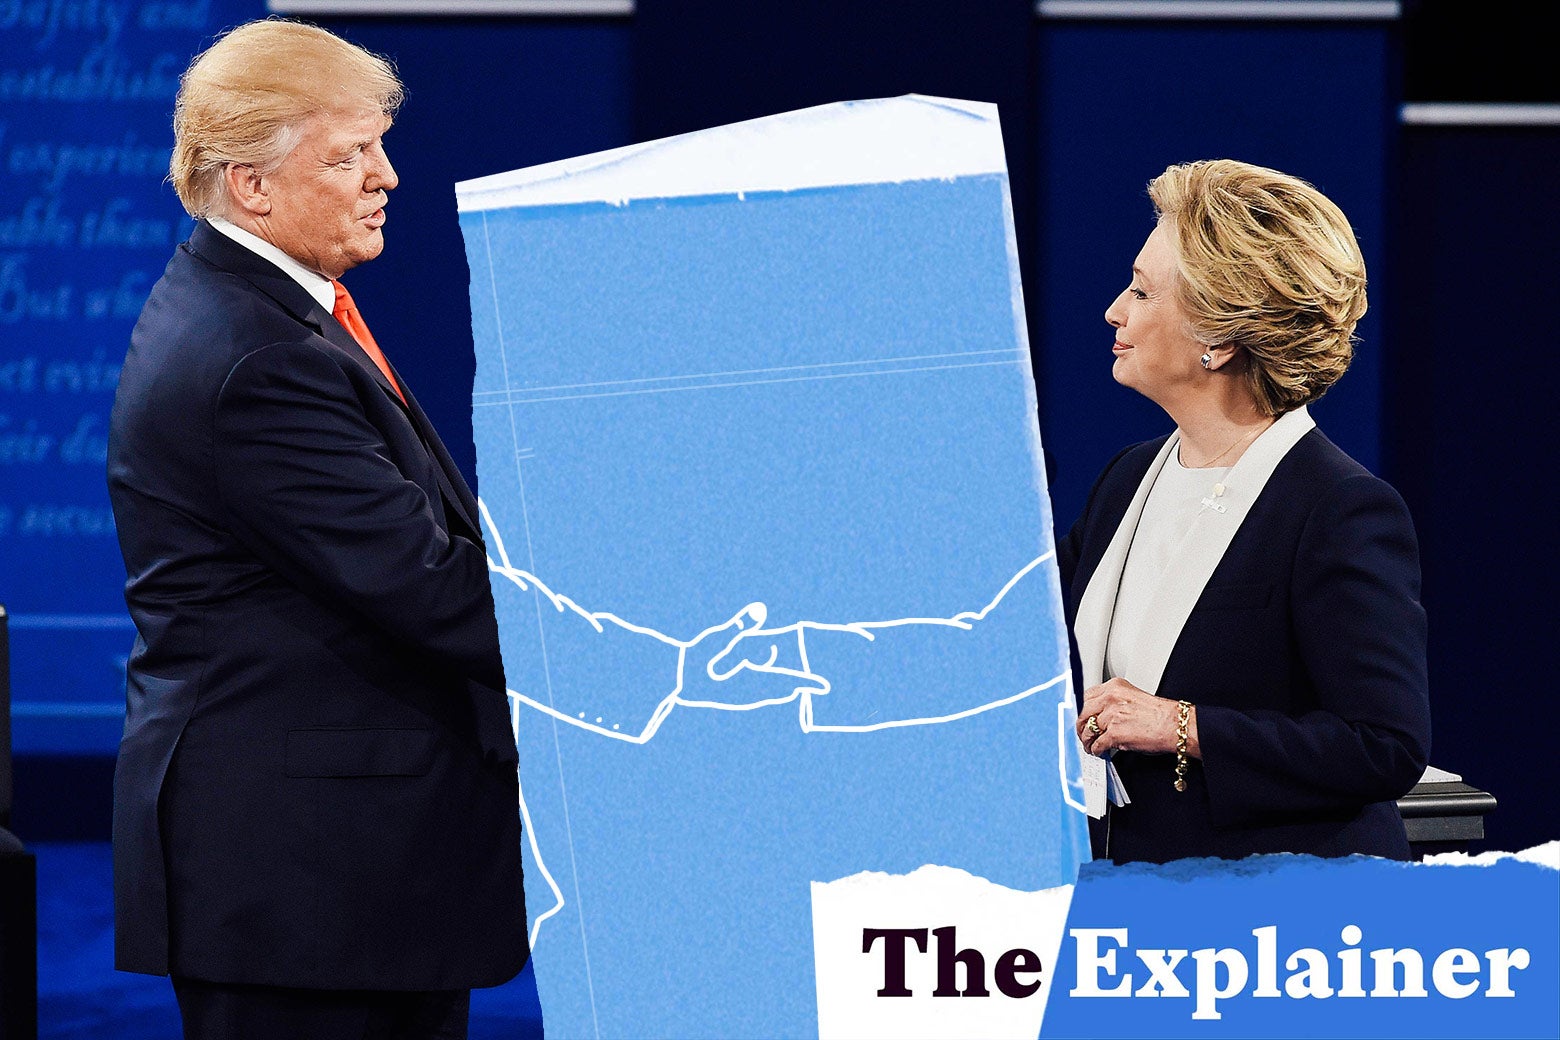 Donald Trump and Hillary Clinton shake hands at a debate.